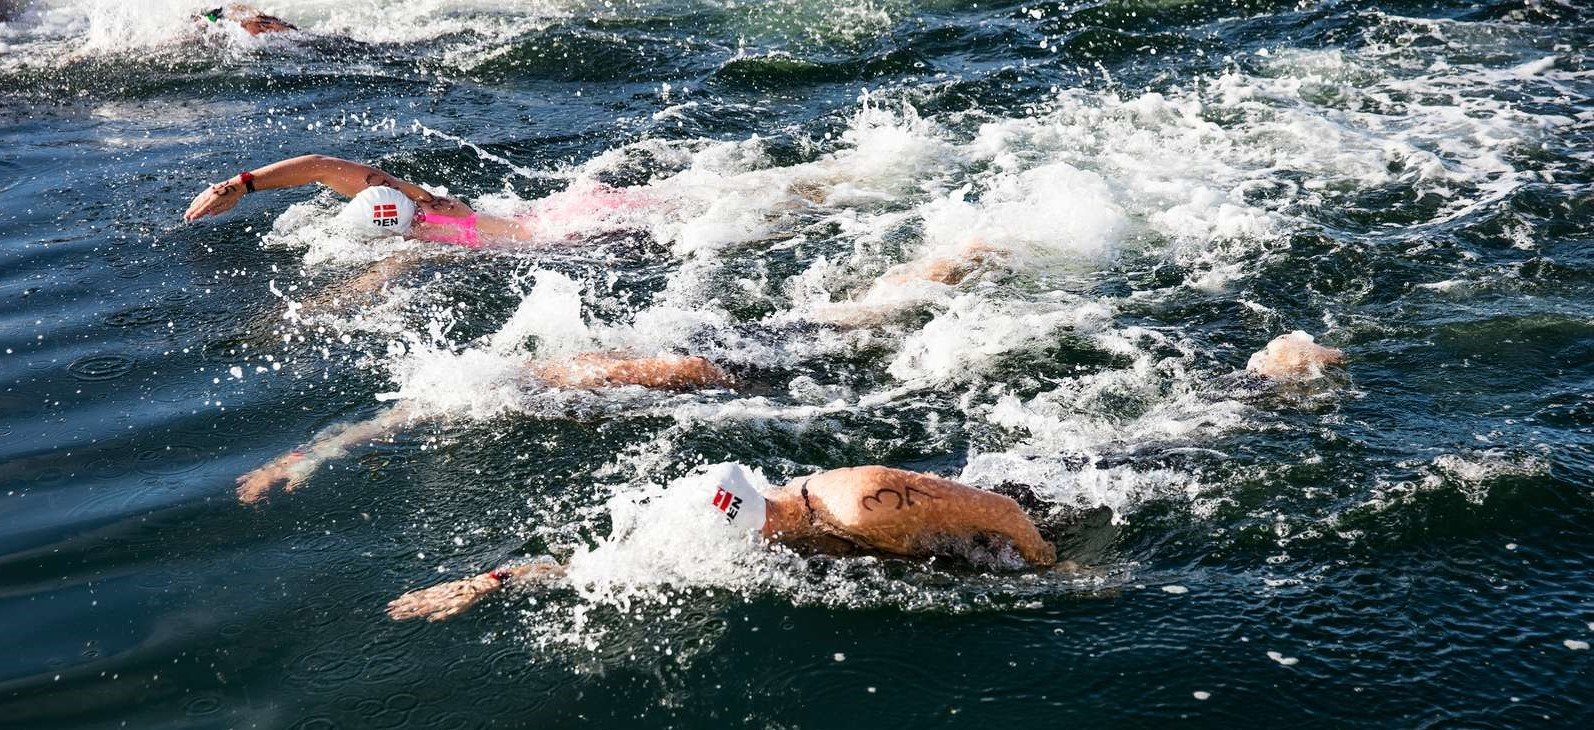 DM 10 KM i åbent vand svømning for senior, junior og masters svømmere